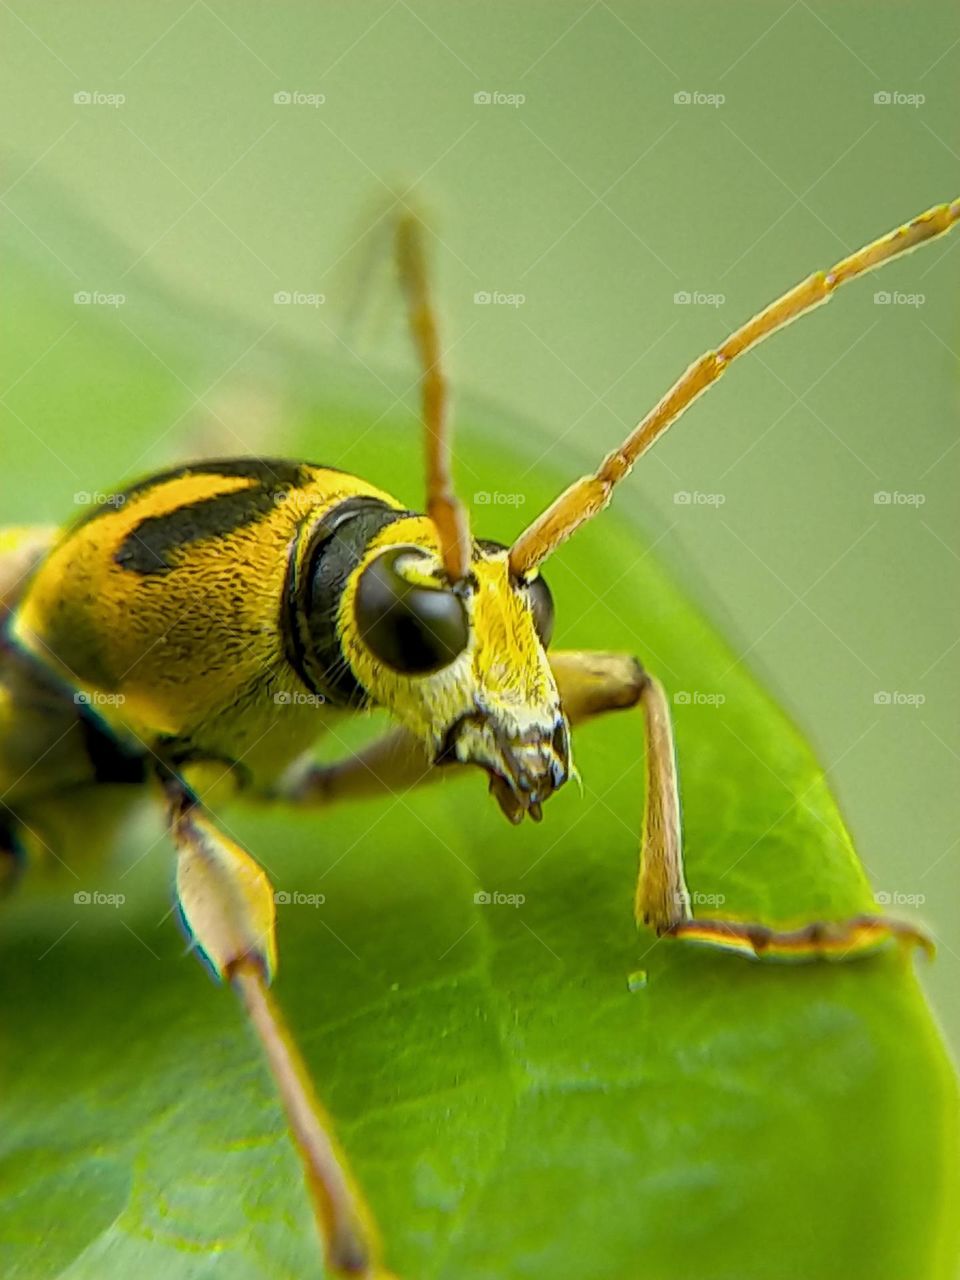 Chlorophorus is a genus of beetles in the family Cerambycidae